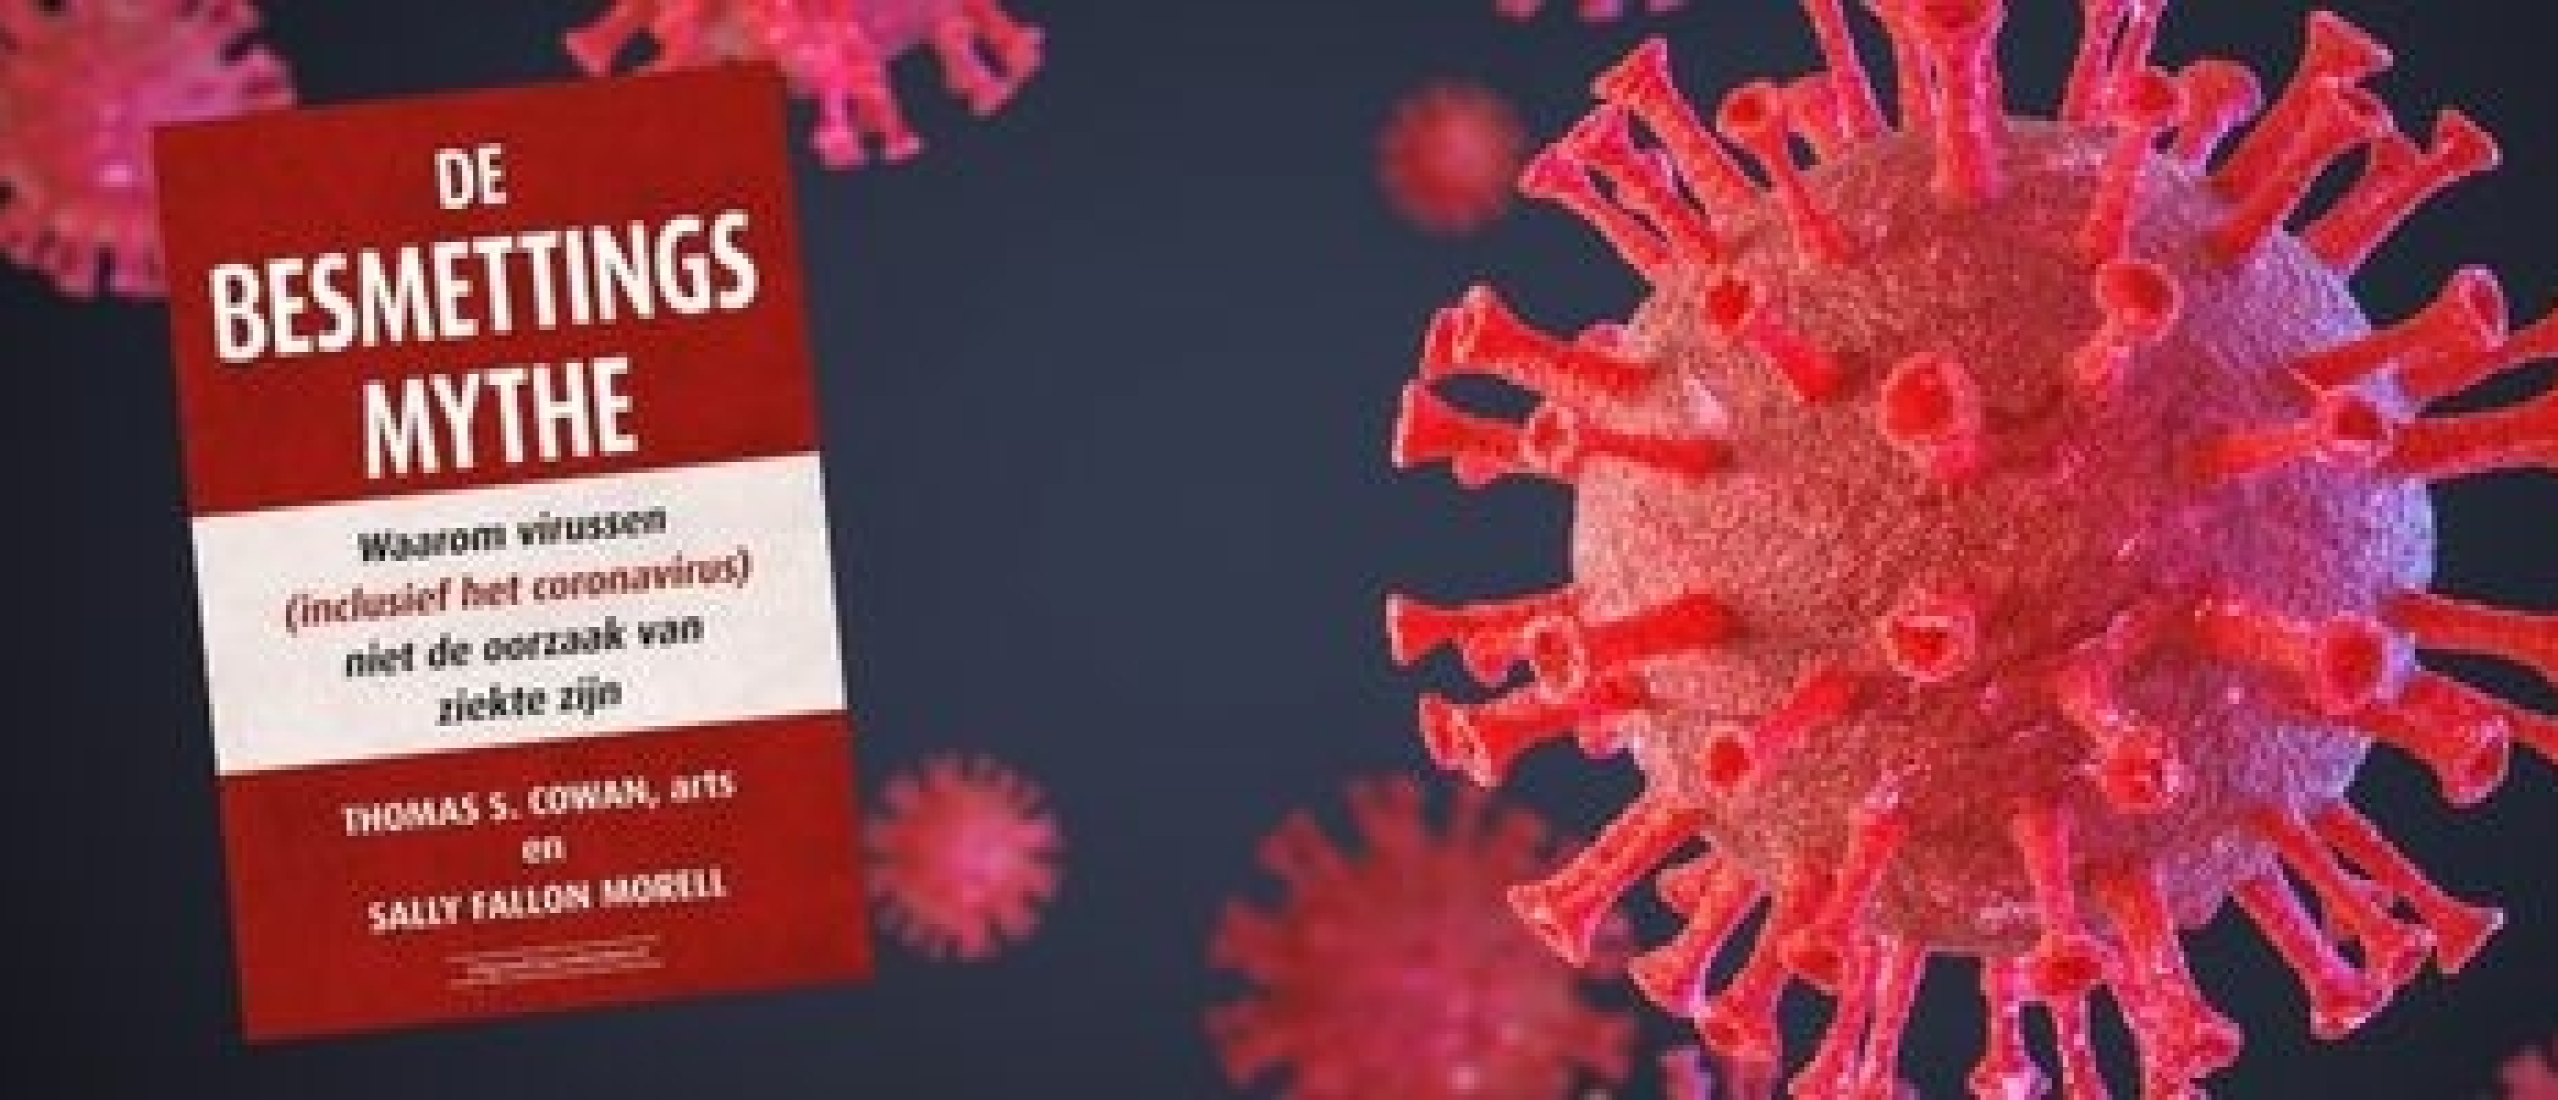 De Besmettingsmythe - Bestaan virussen eigenlijk wel?